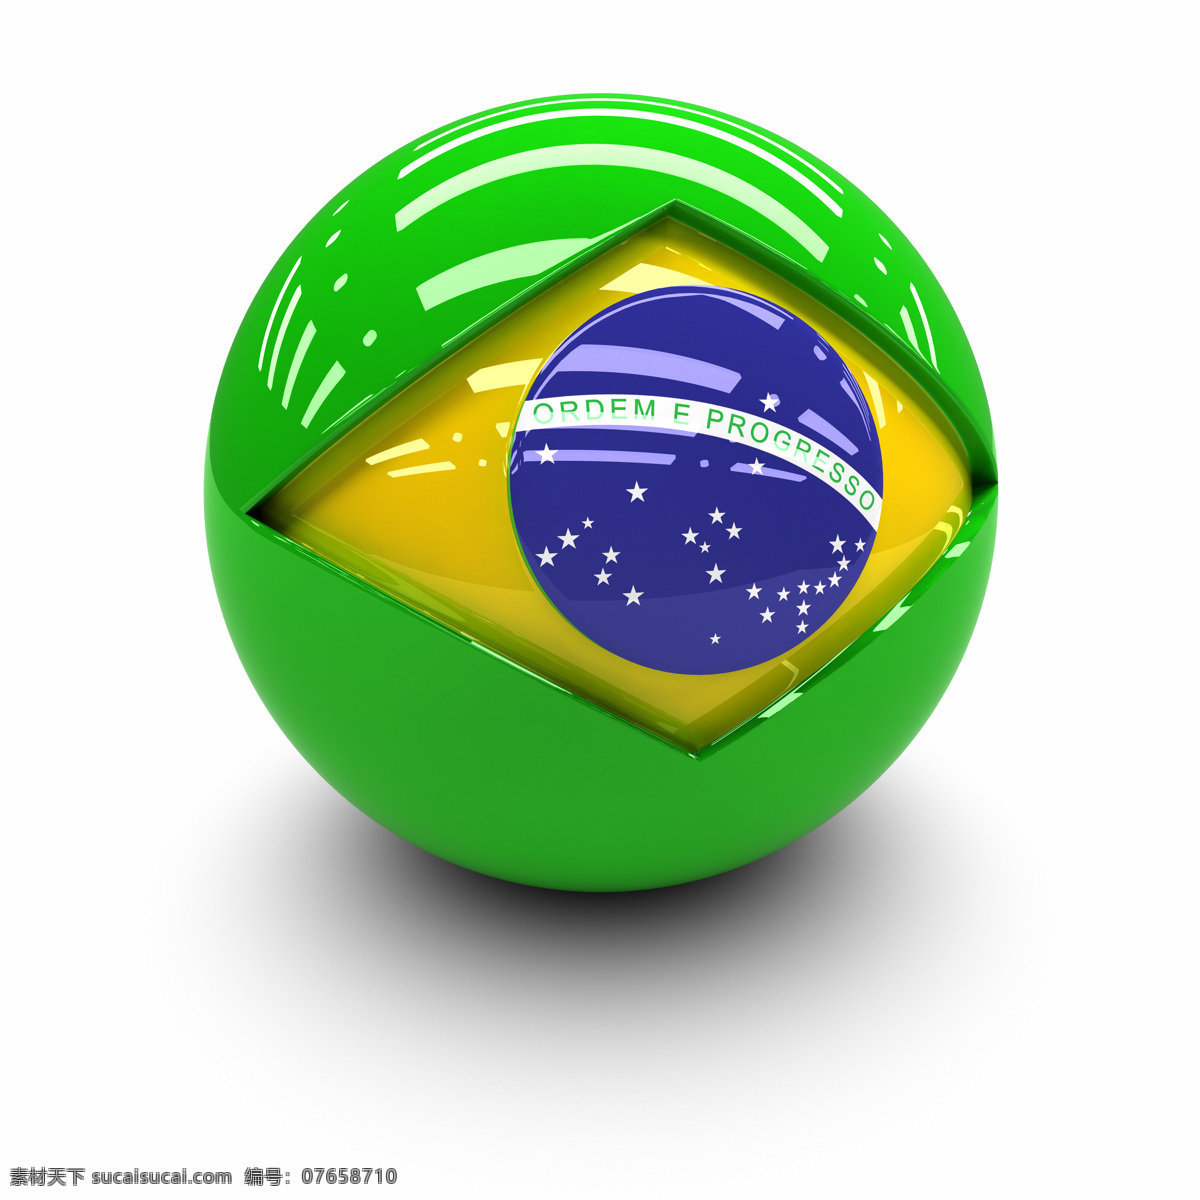 巴西 国旗 球体 巴西国旗 国旗球体 3d国旗 3d球体 地图图片 生活百科